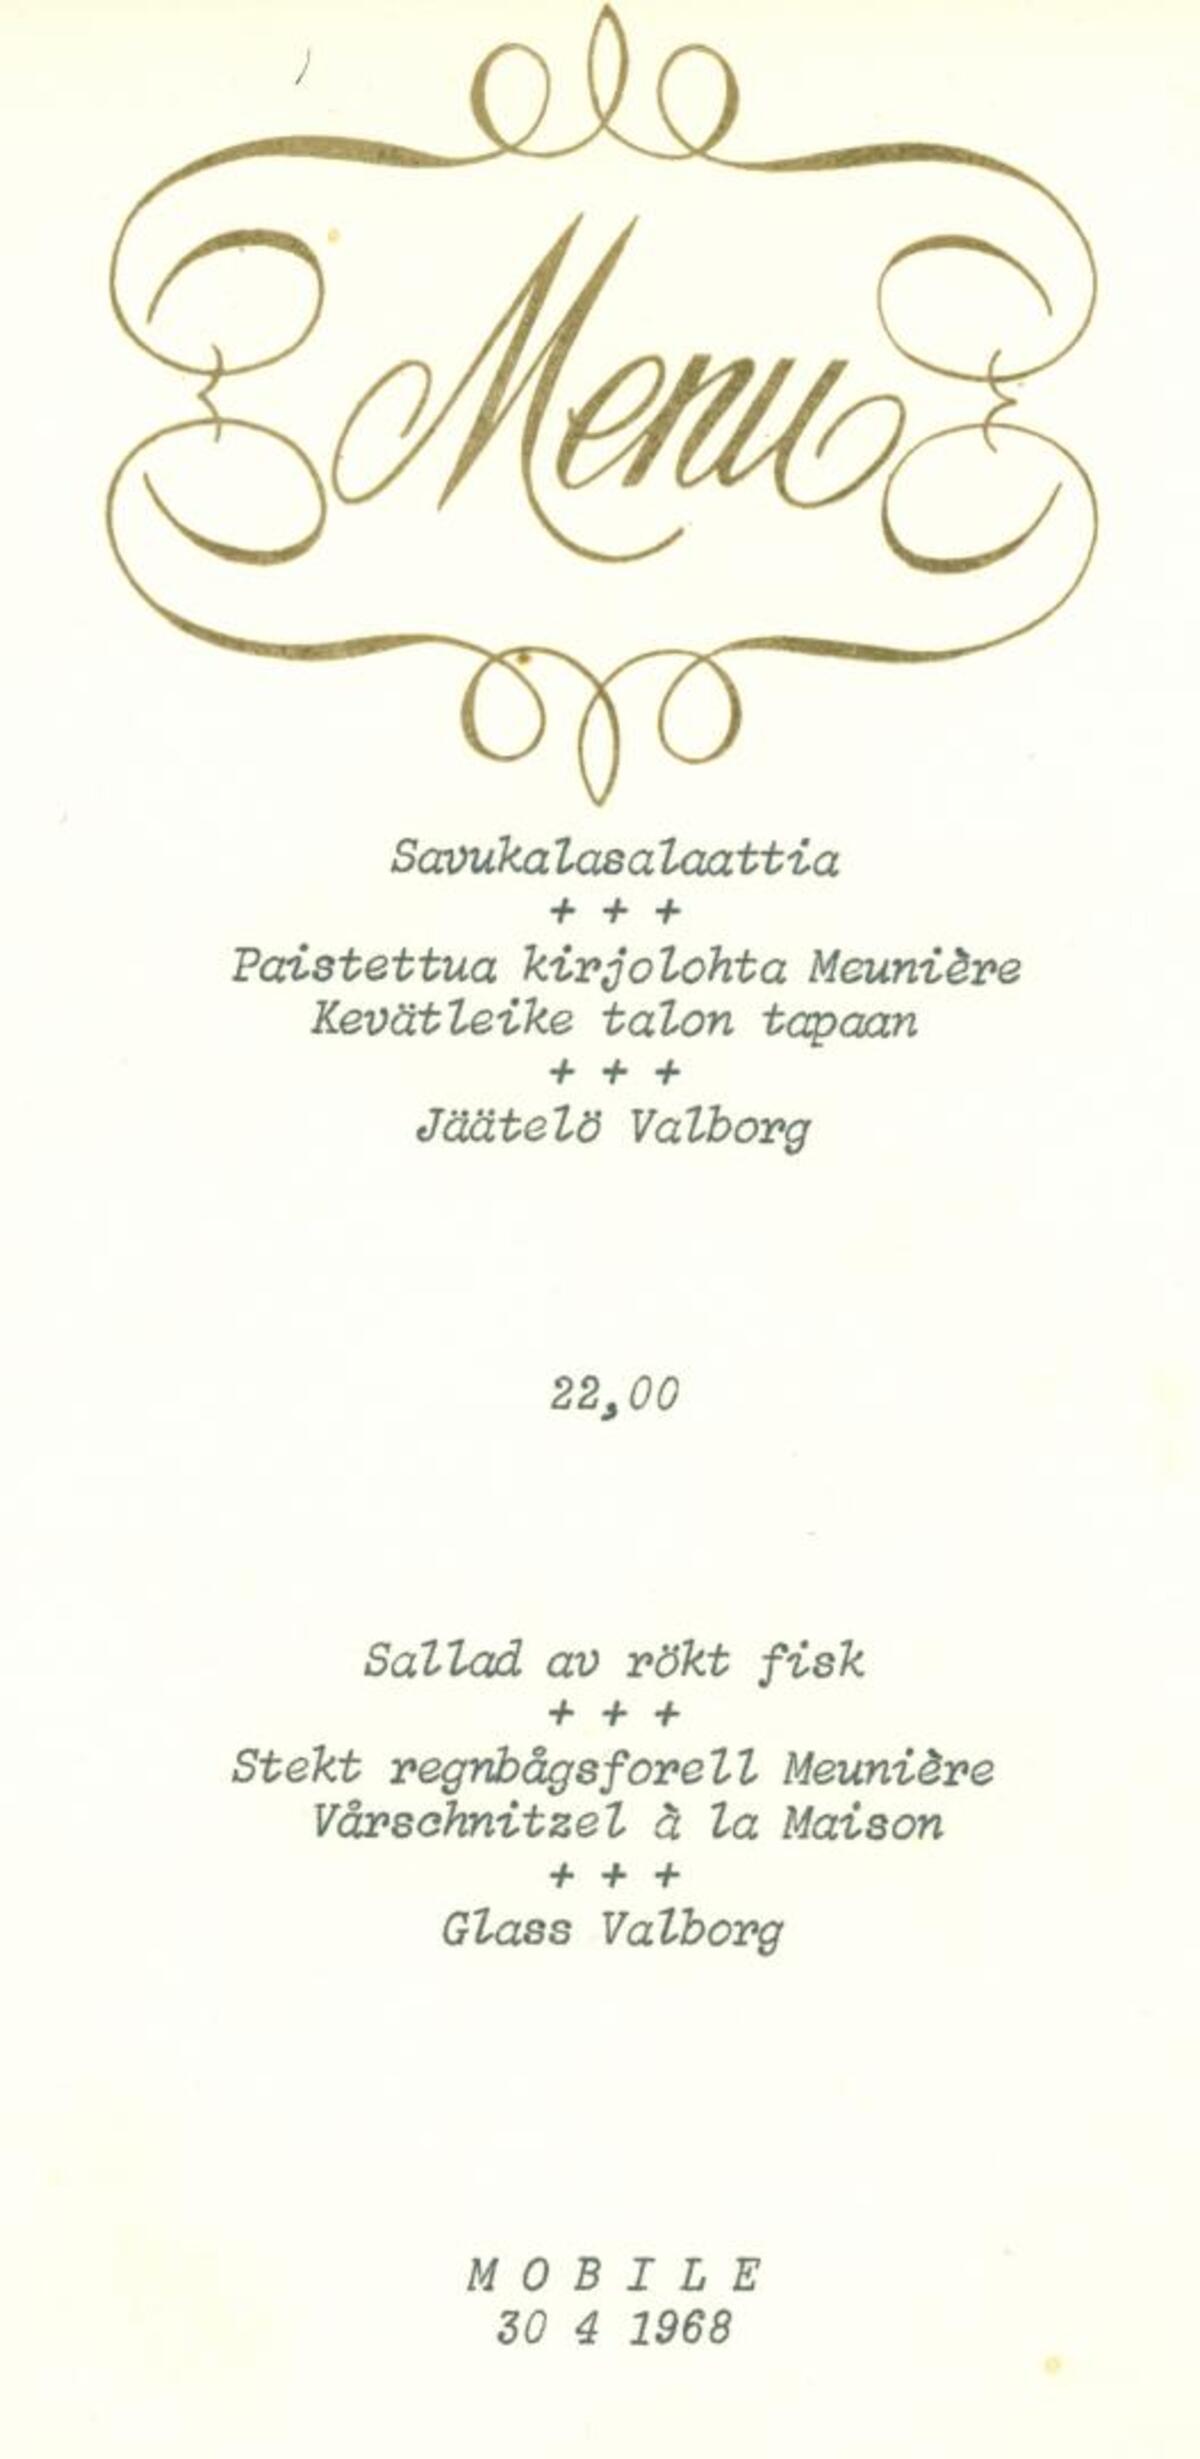 Ravintola Mobilen menyy 30.4.1968